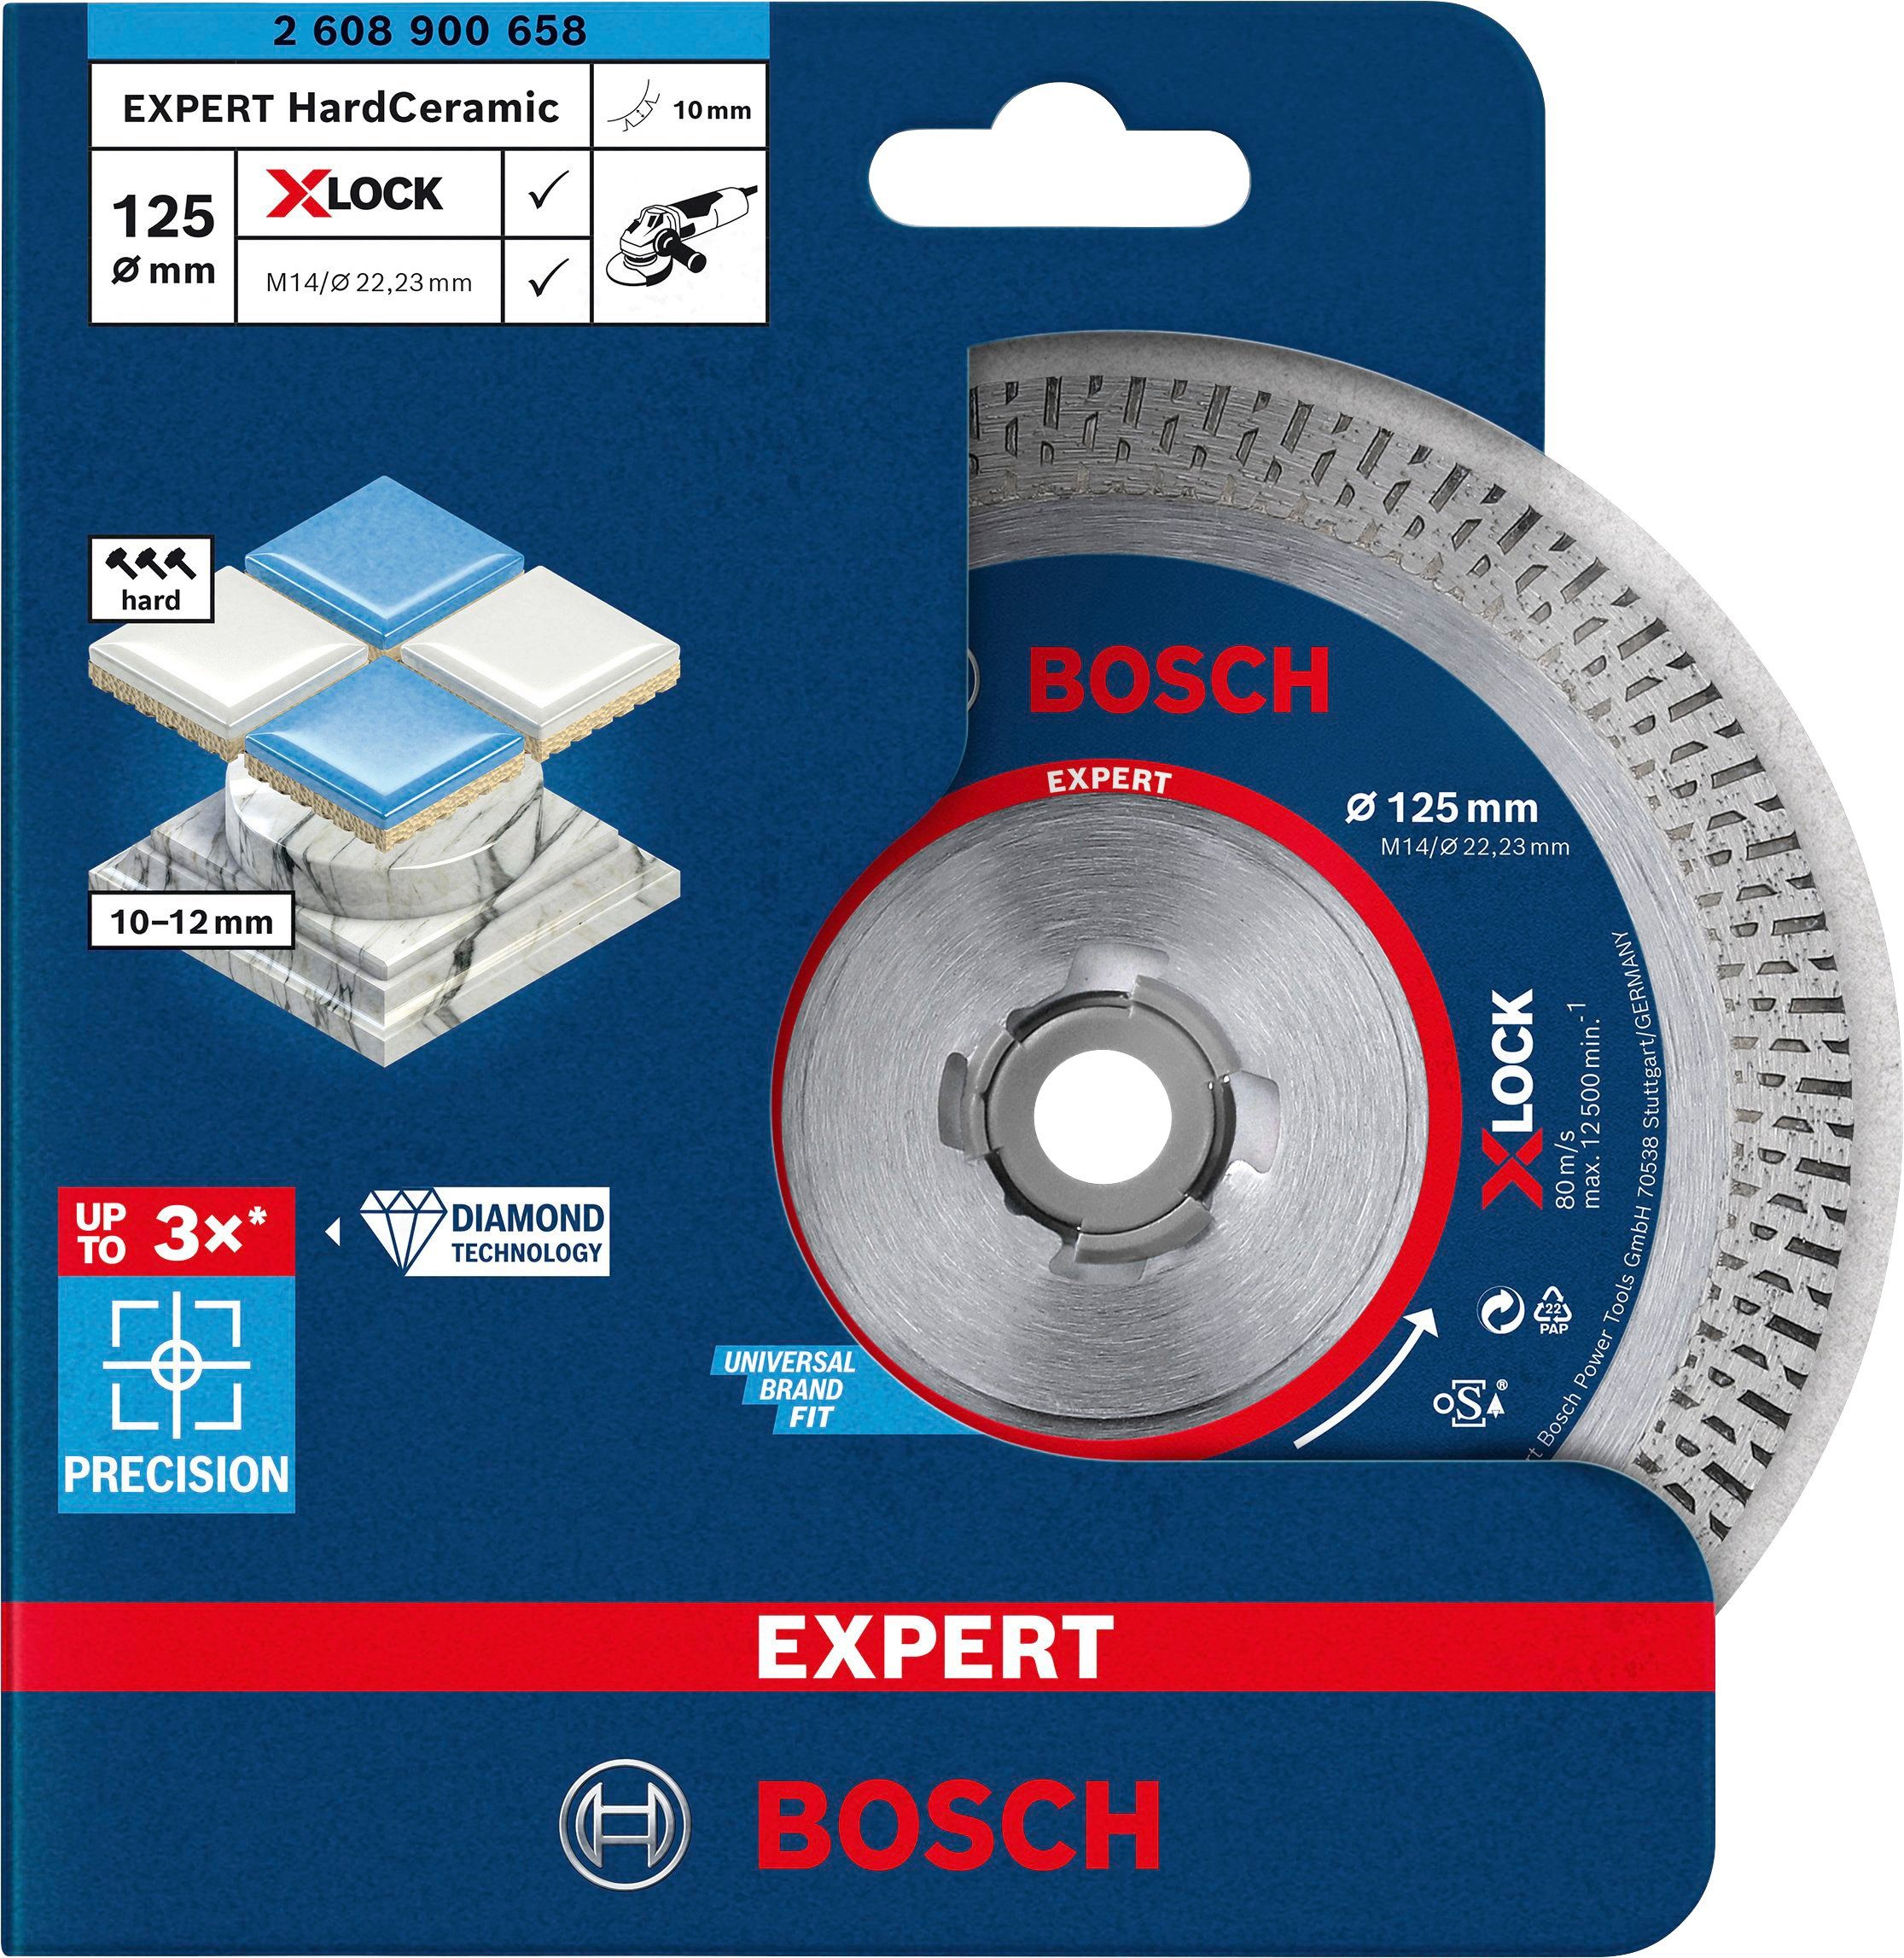 Bosch Professional Diamanttrennscheibe 125 Expert x 22.23 Ø x mm mm, 1.4 HardCeramic X-LOCK, 10